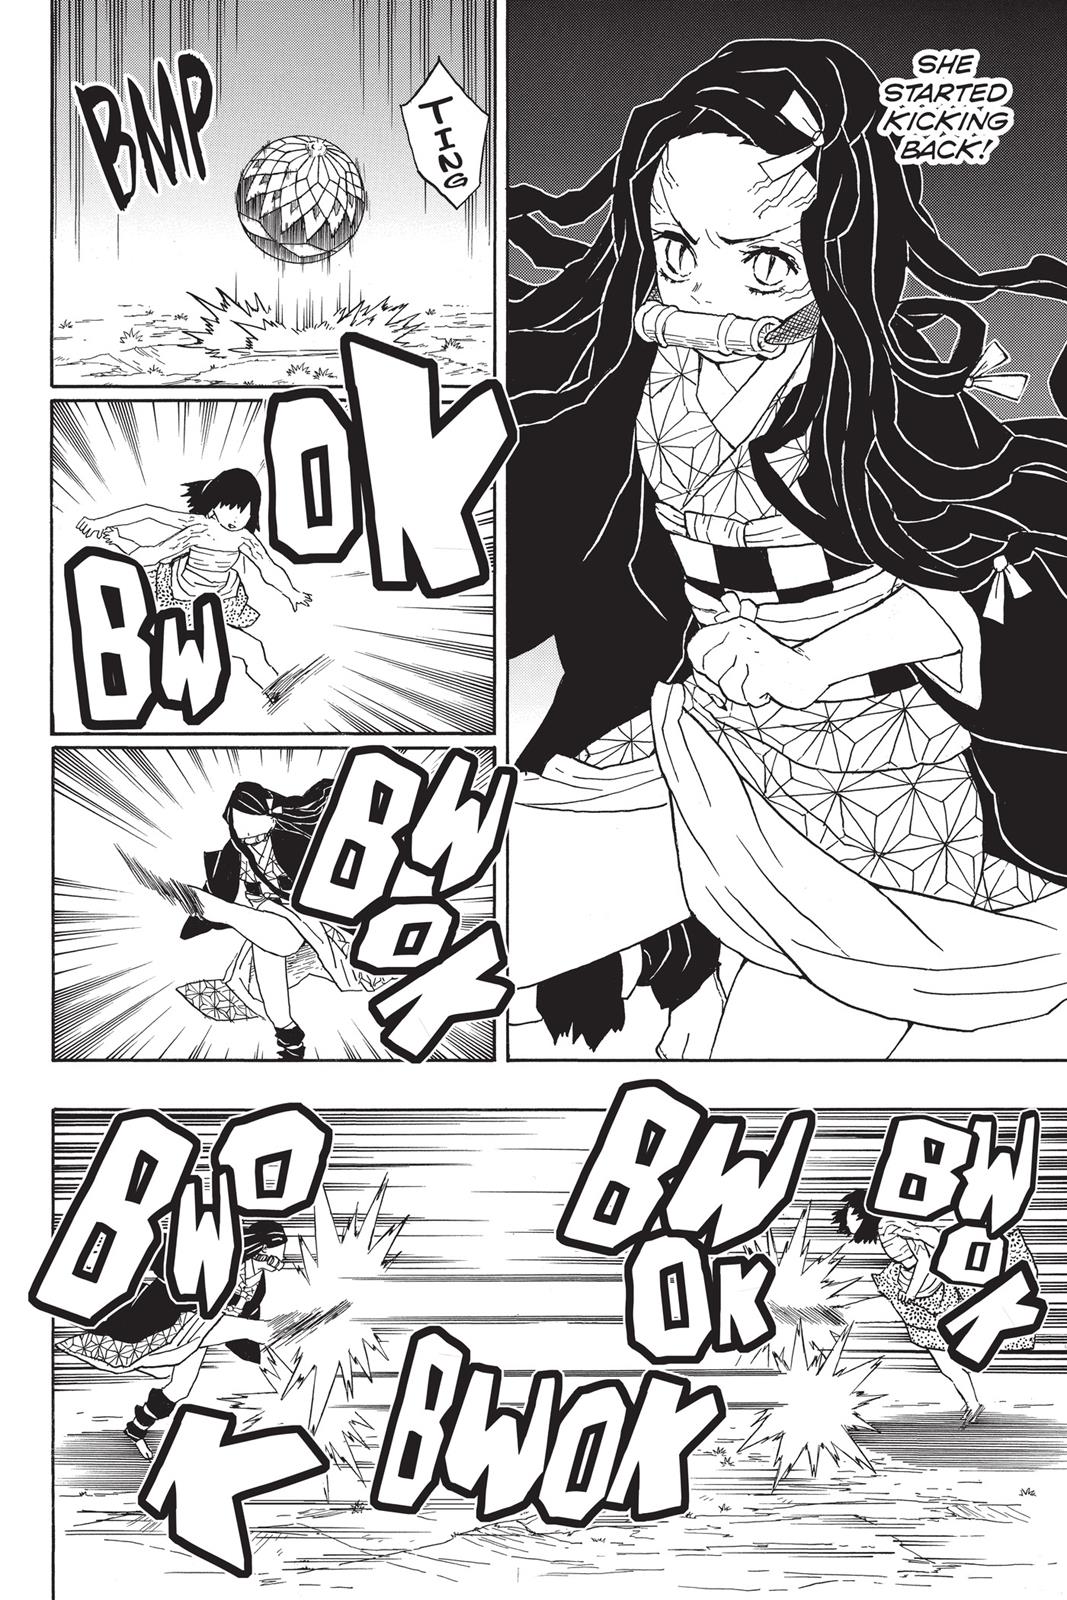 Demon Slayer Manga Manga Chapter - 18 - image 7